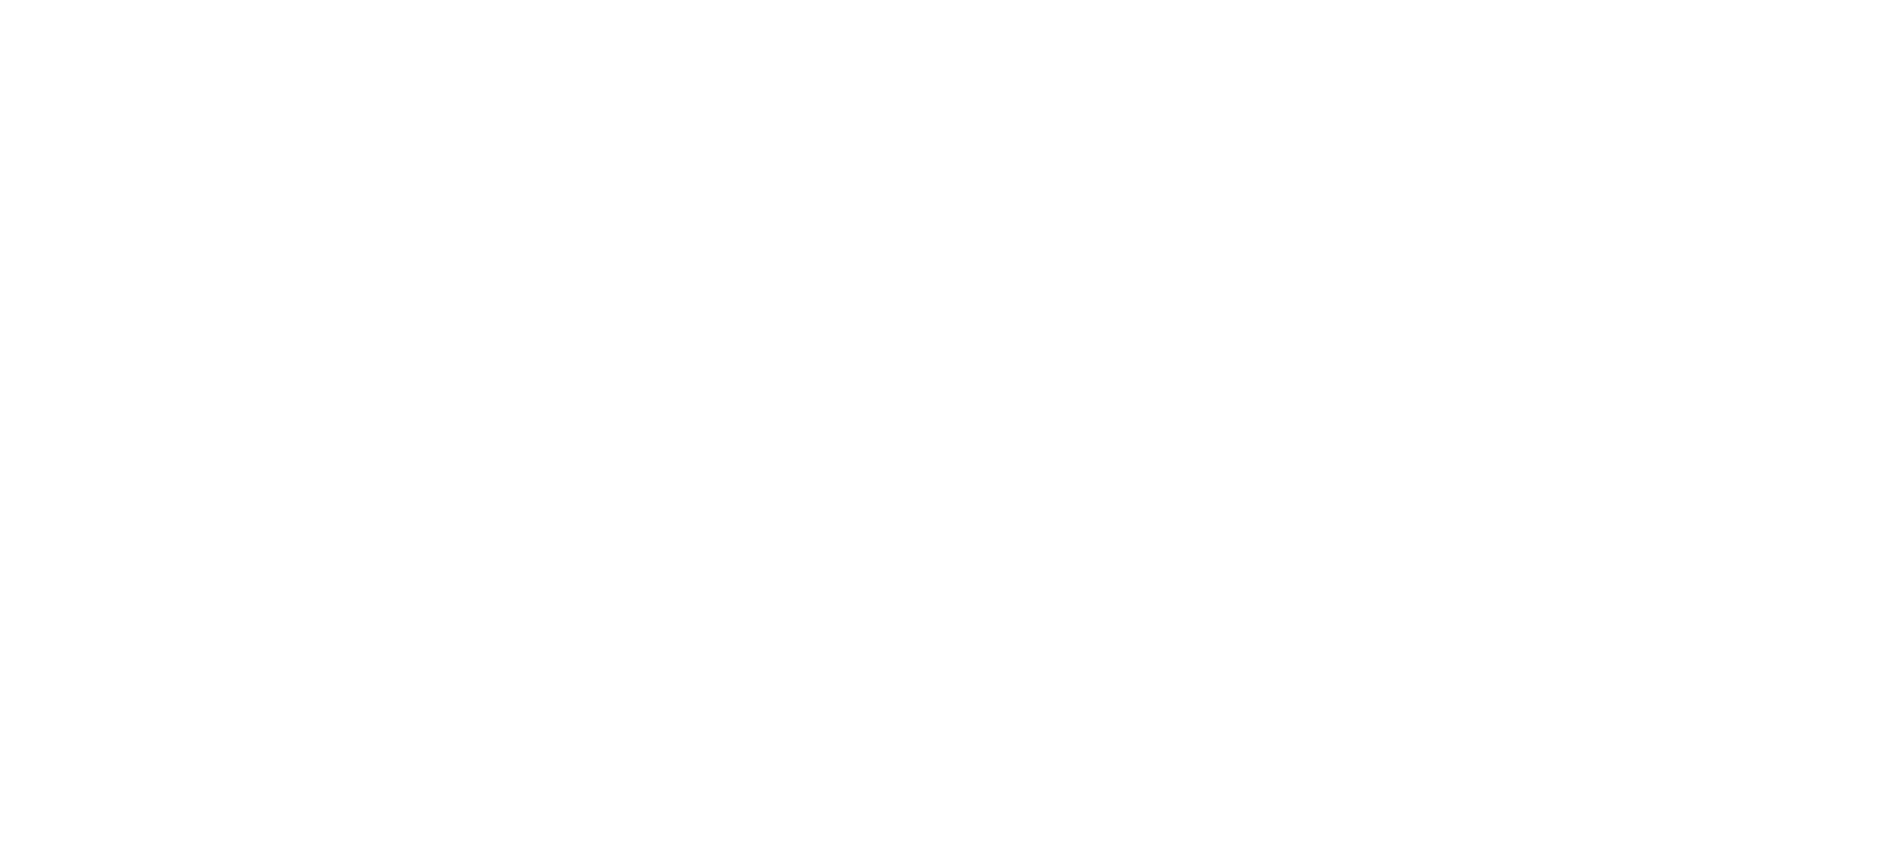 FASD Family Life